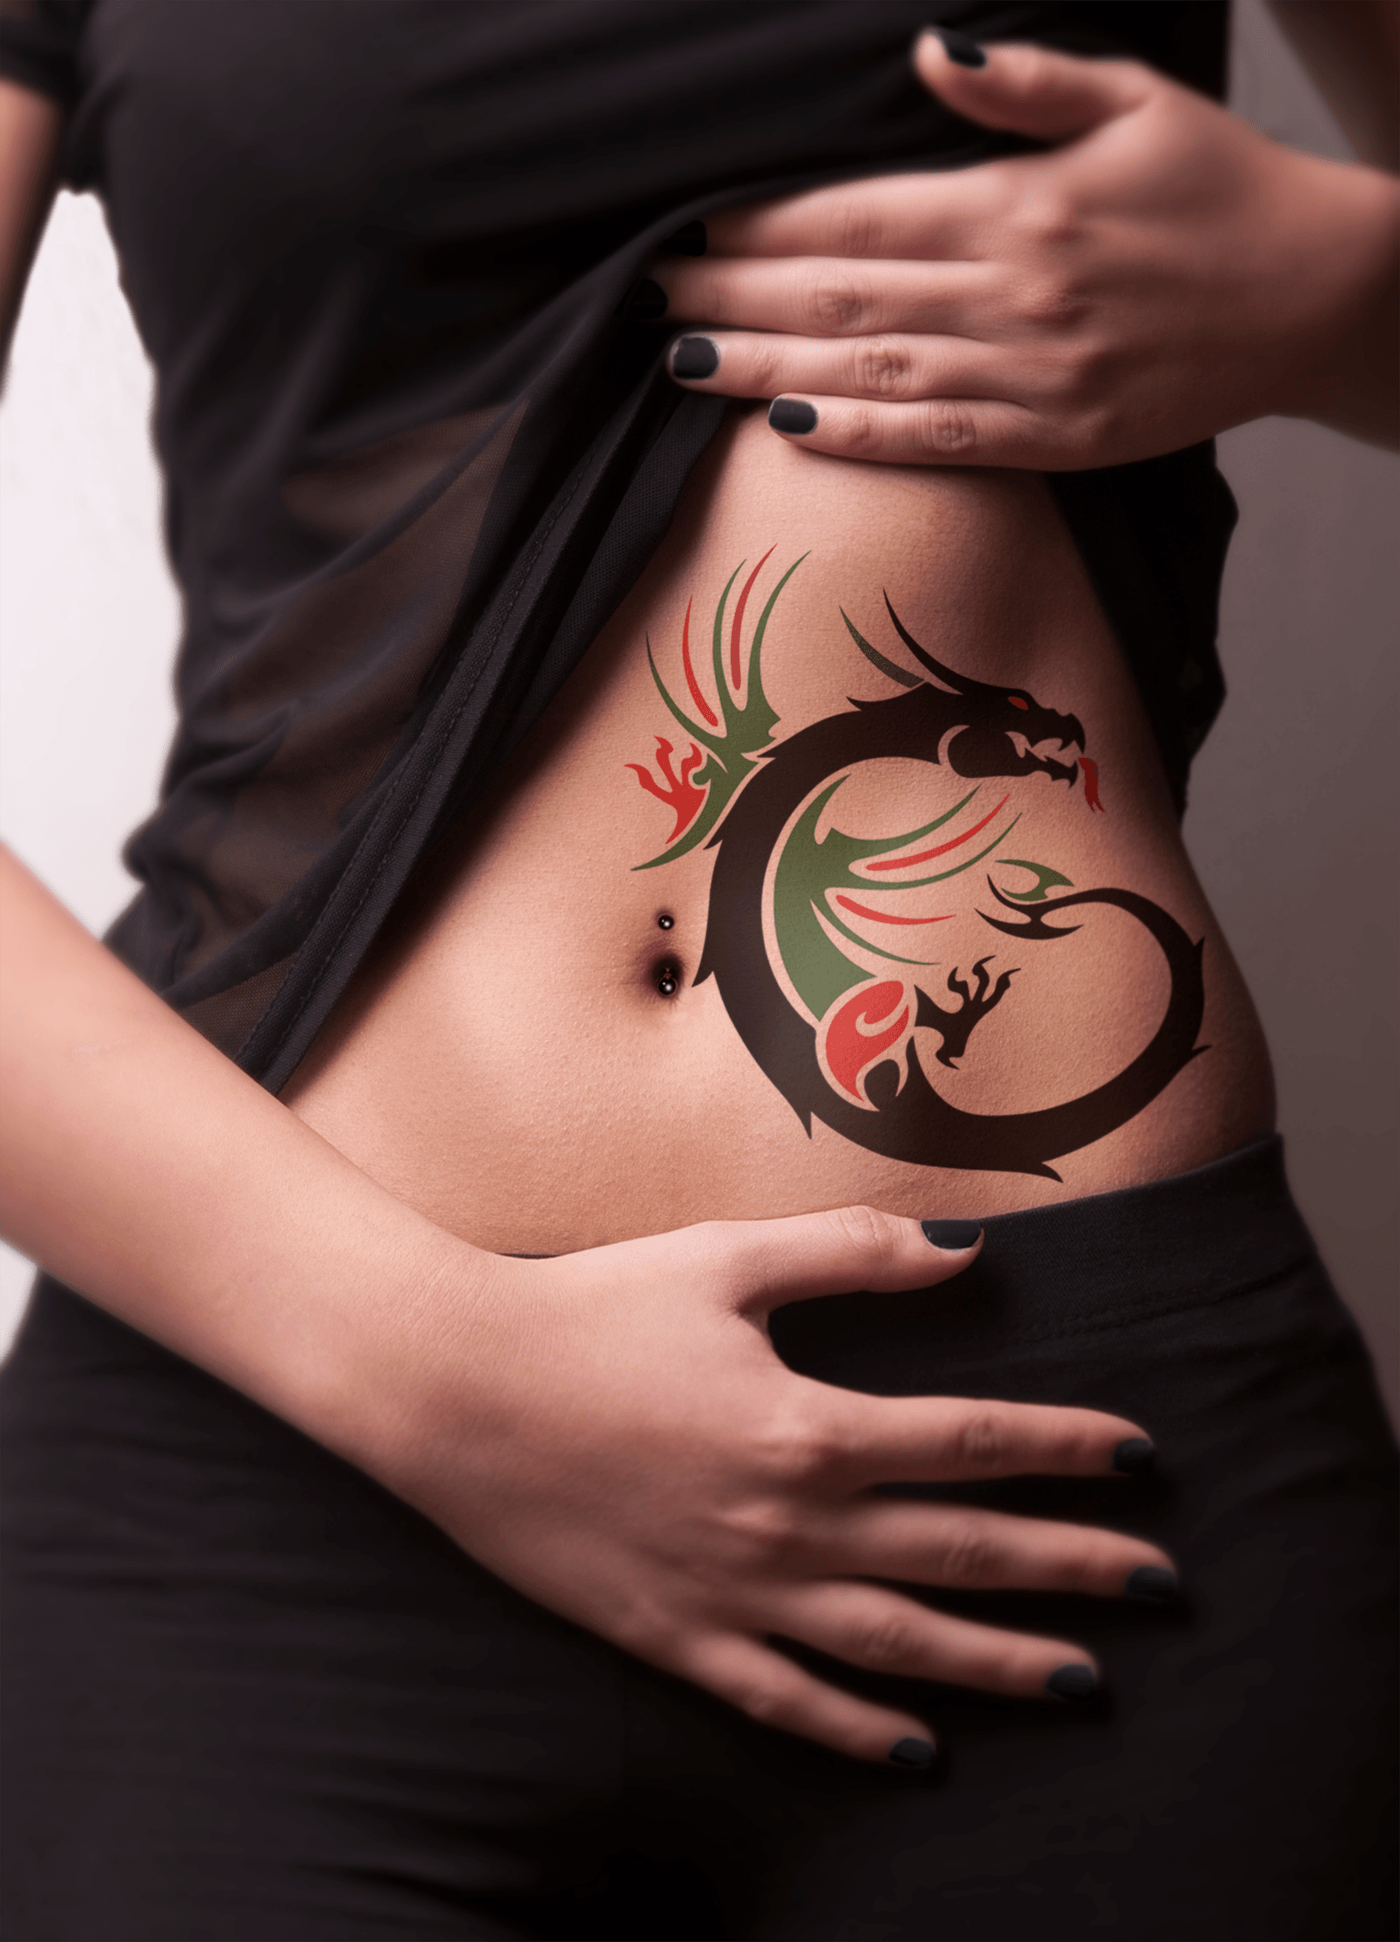 tattoo design tattoos Tattoo Art temporary tattoo body tattoo Fashion tattoo JBR-tattoo Royal-Airbrush-tattoo